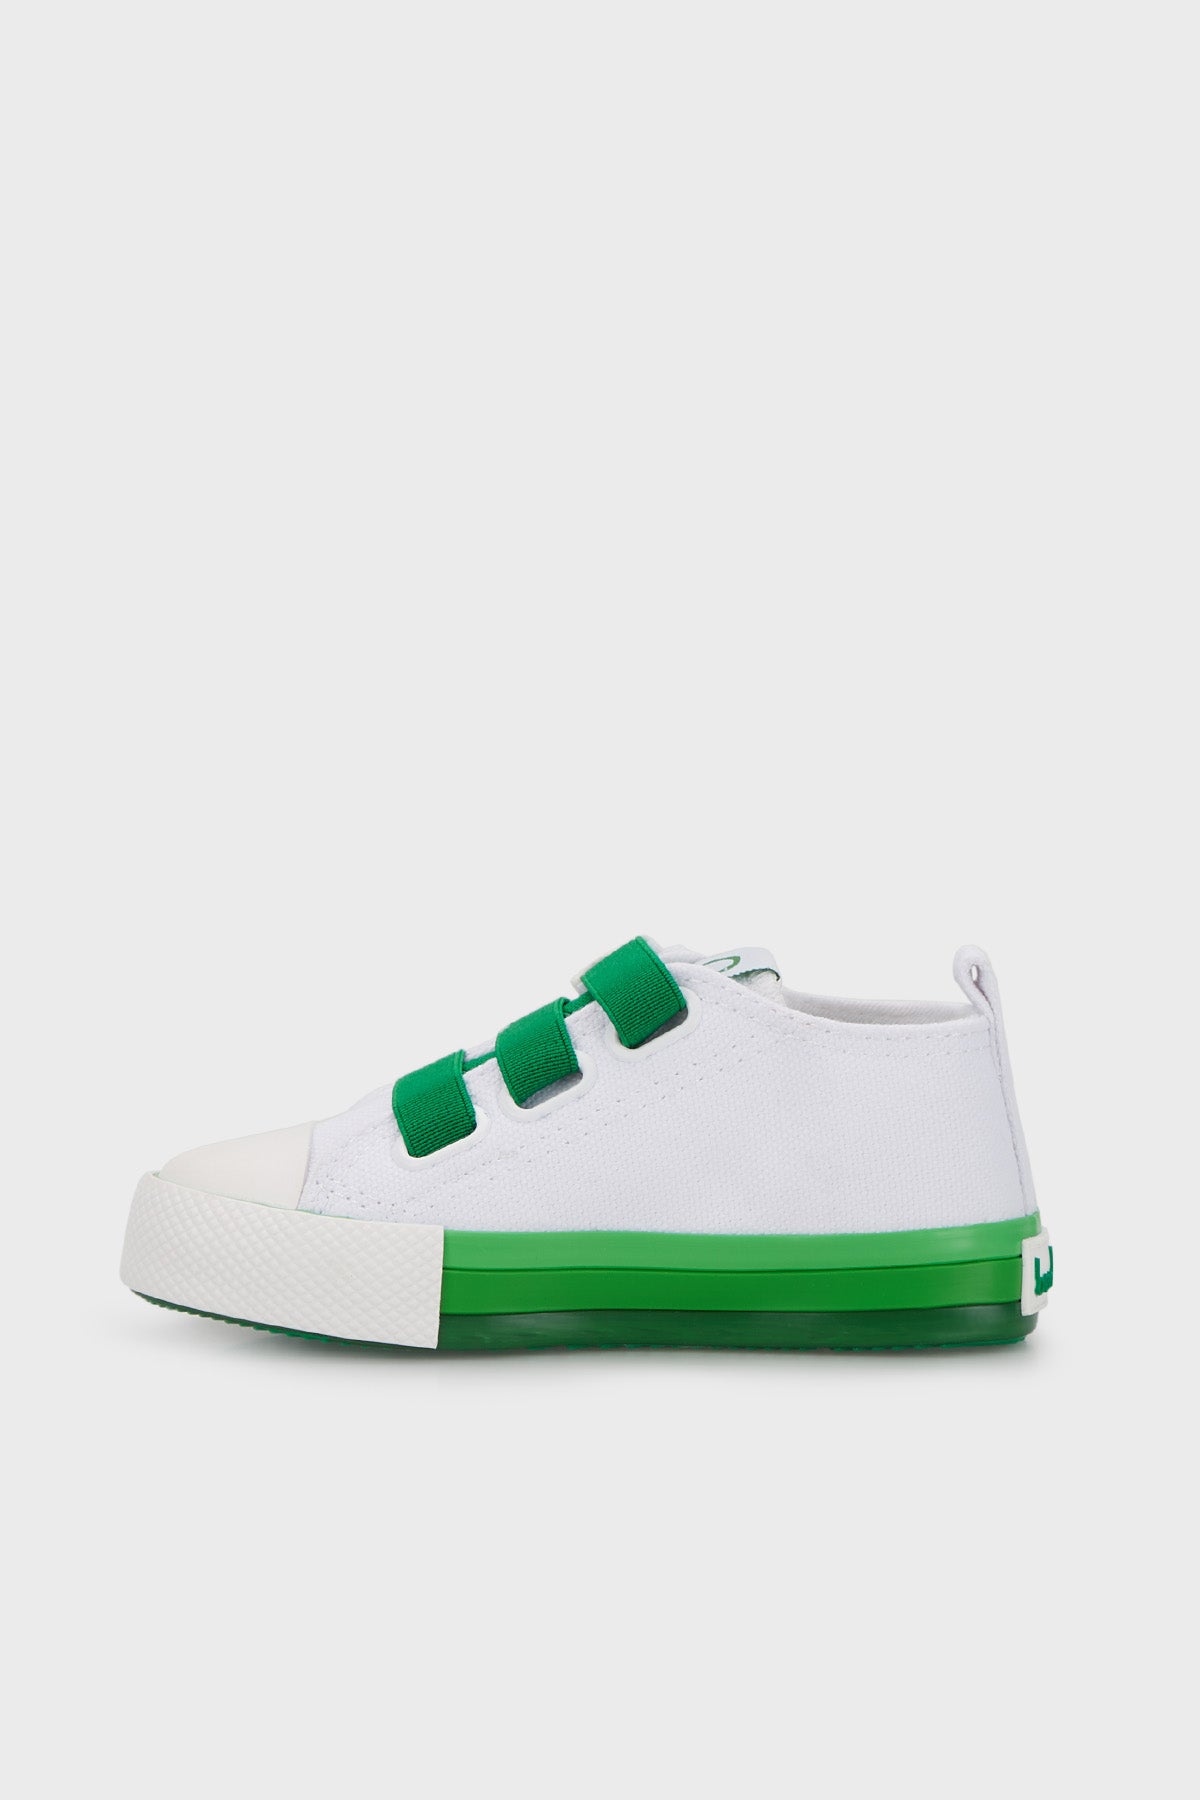 United Colors Of Benetton Sneaker Unisex Çocuk Ayakkabı BN-30649 BEYAZ-YEŞİL